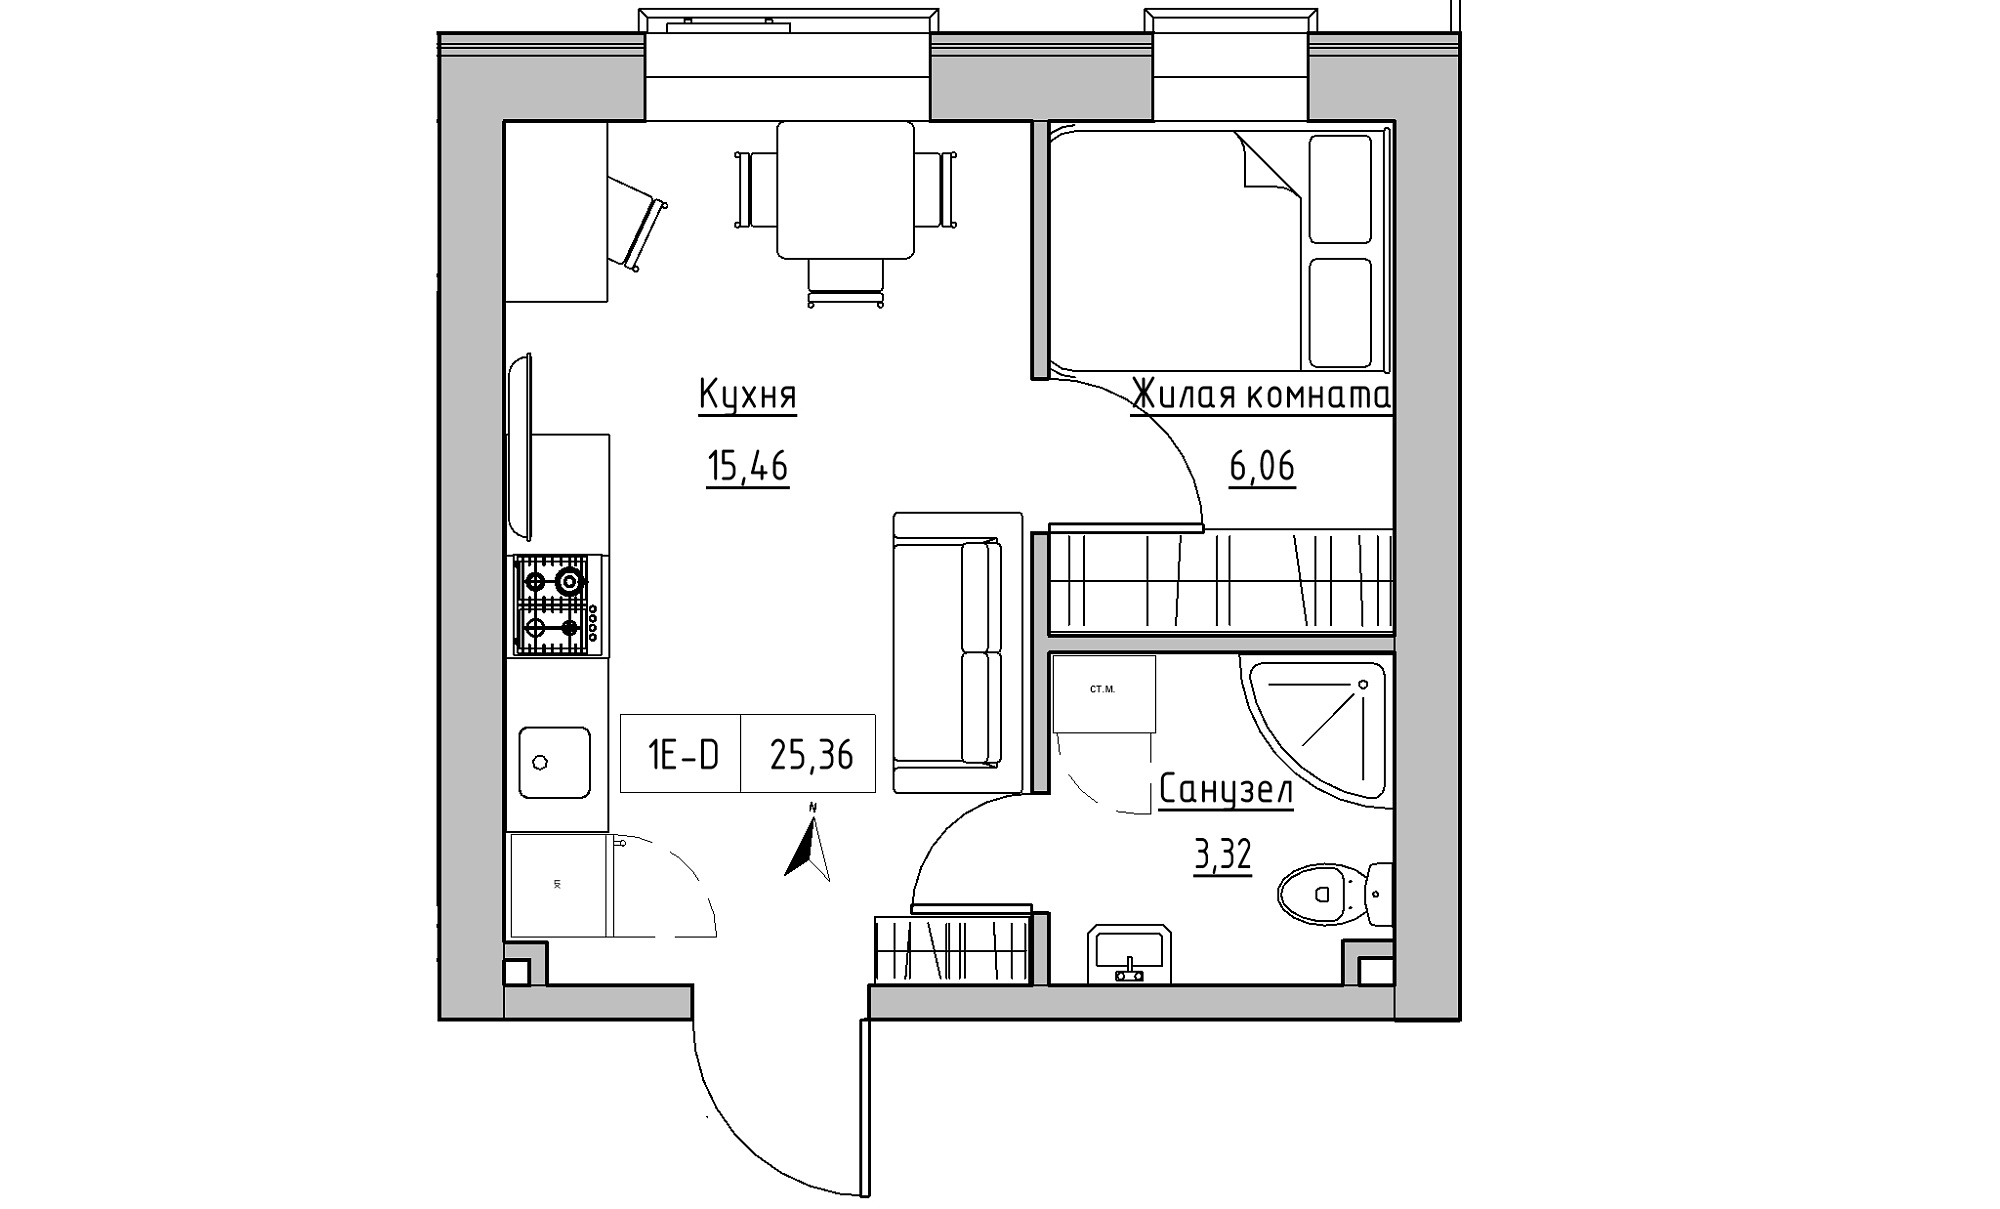 Планування 1-к квартира площею 25.36м2, KS-016-05/0002.